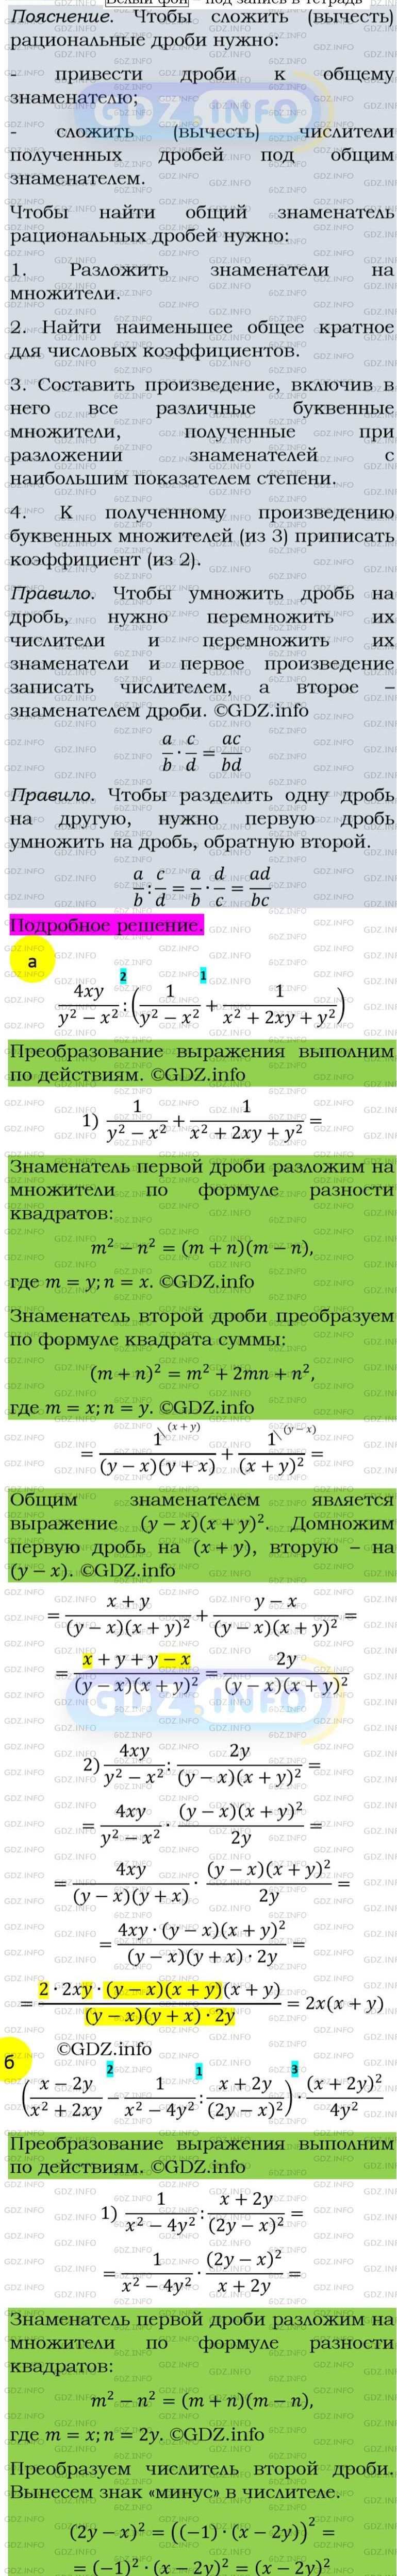 Фото подробного решения: Номер задания №157 из ГДЗ по Алгебре 8 класс: Макарычев Ю.Н.